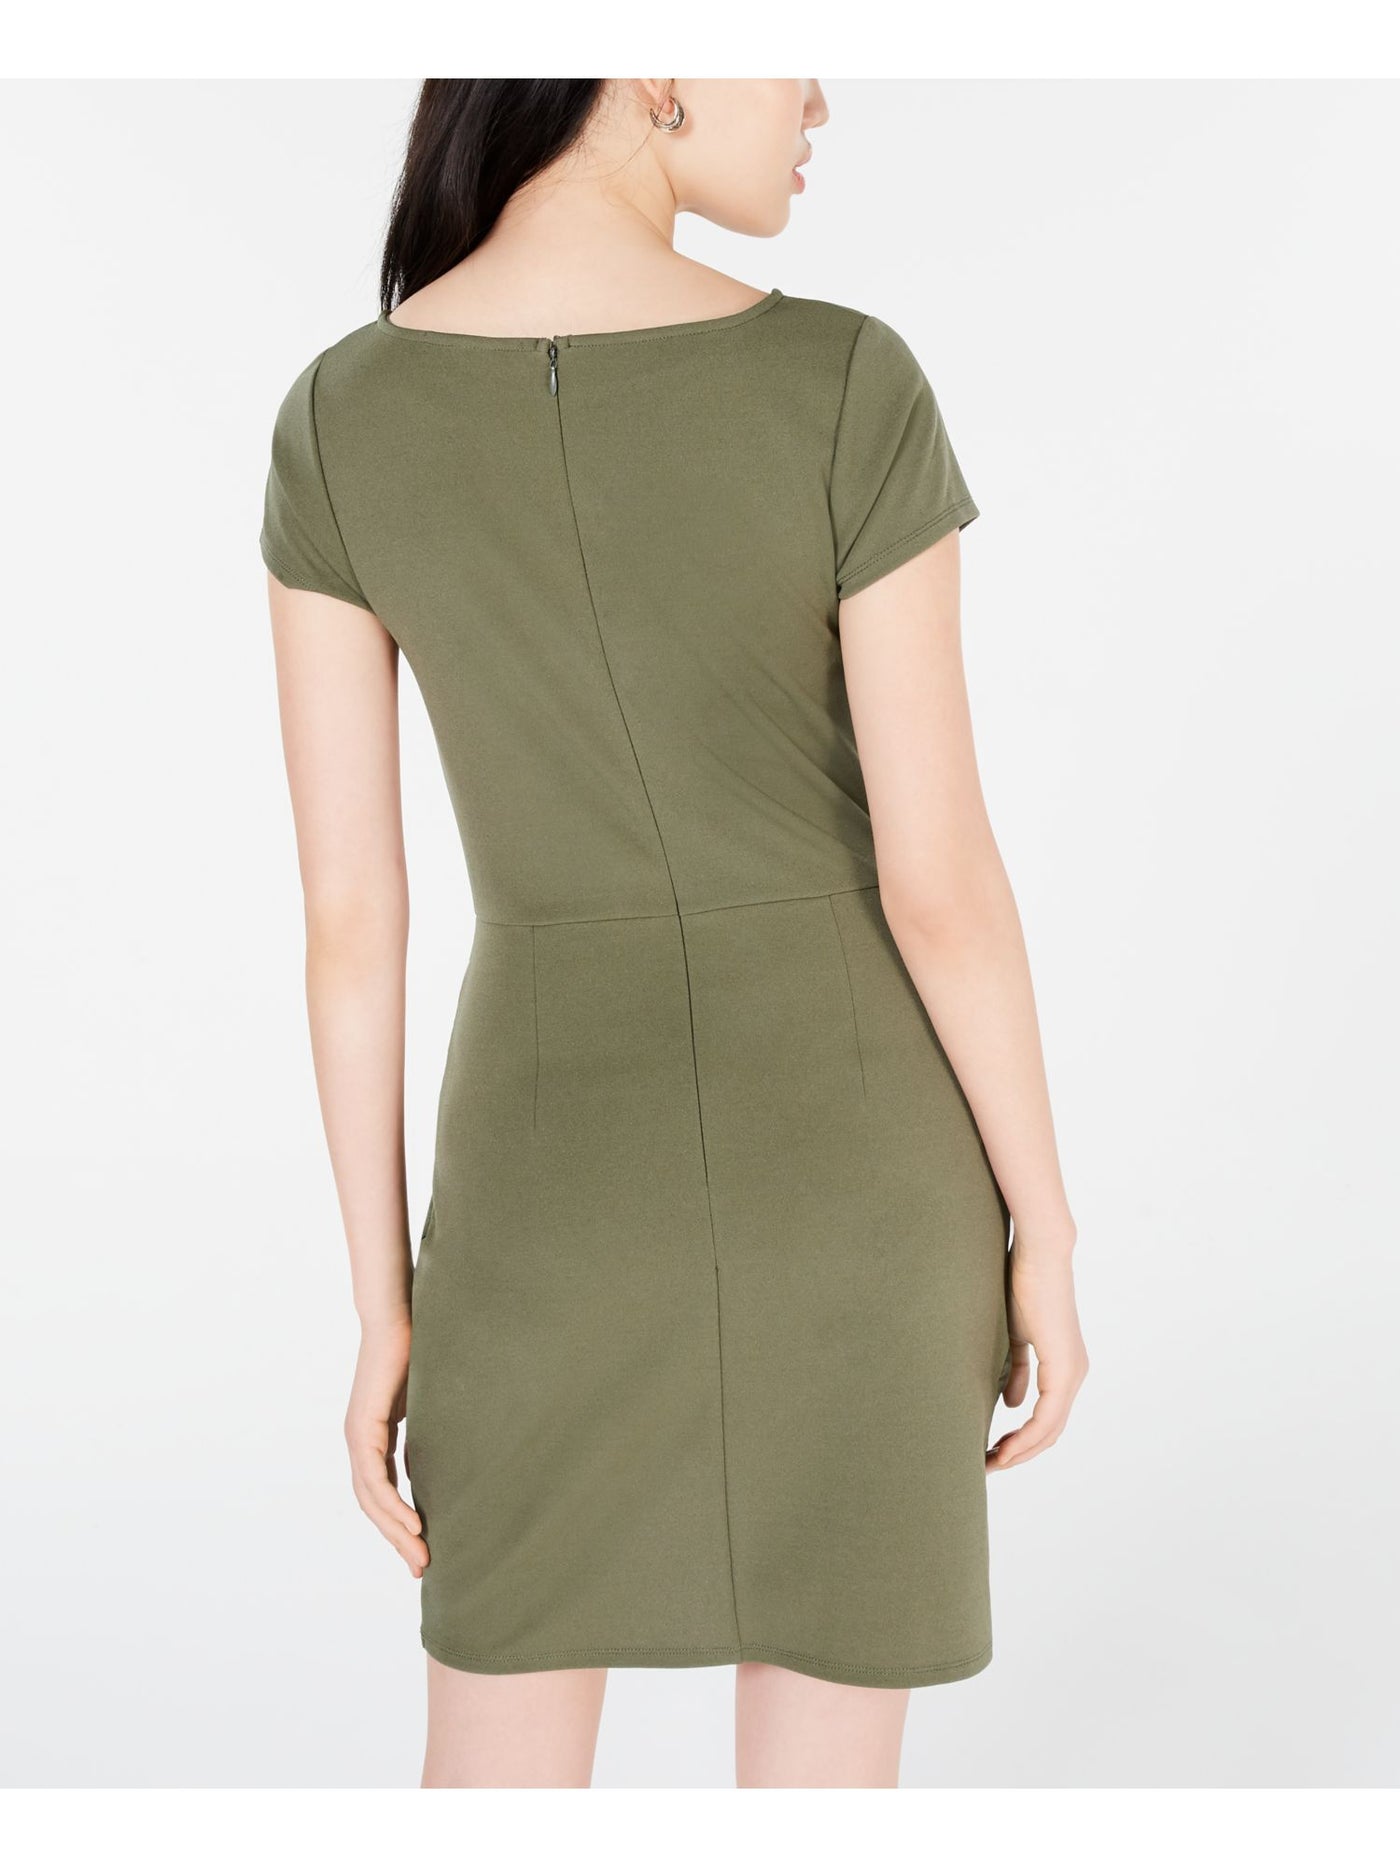 PLANET GOLD Womens Green Zippered Short Sleeve Jewel Neck Short Cocktail Body Con Dress Juniors XXS